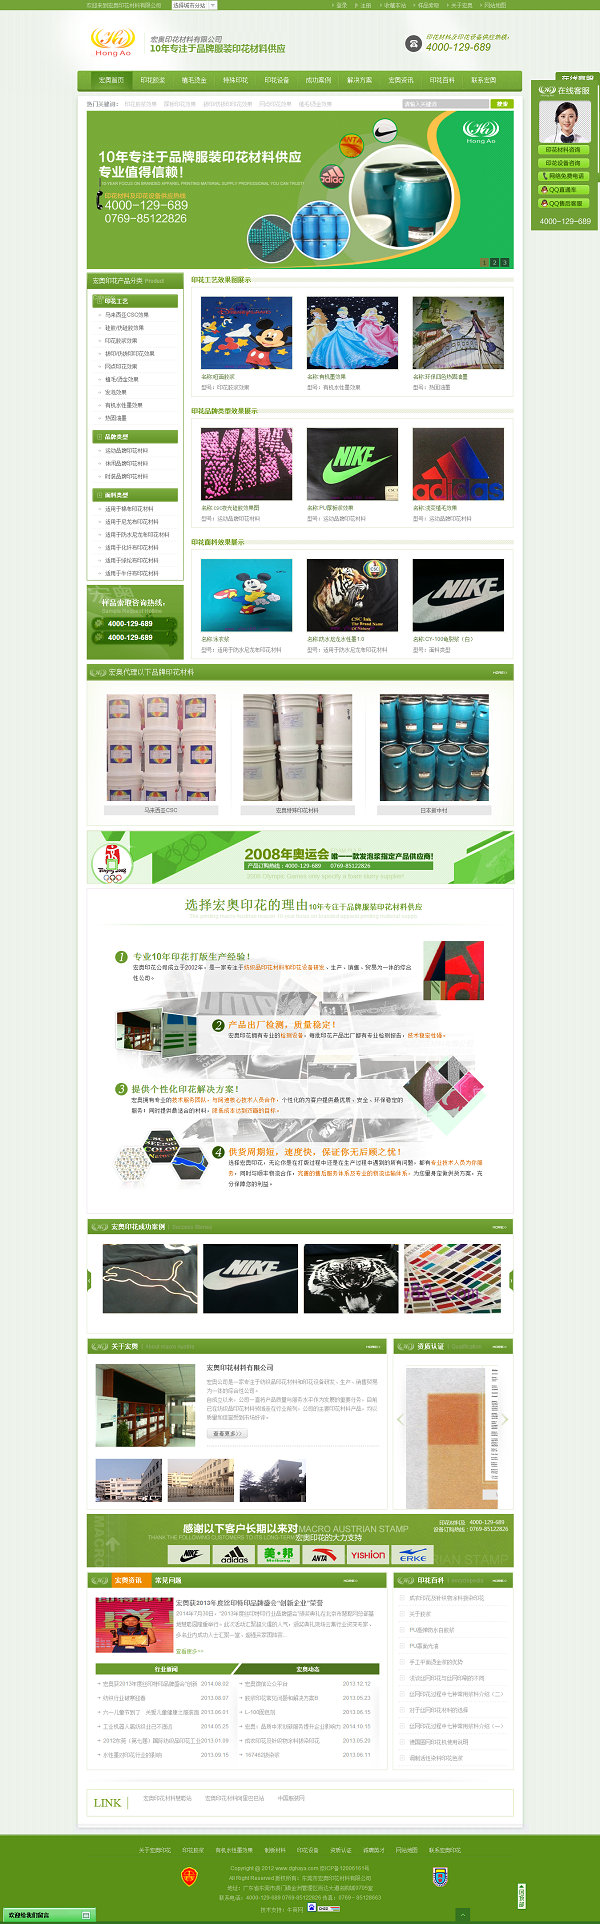 宏奥特殊印花材料营销型网站